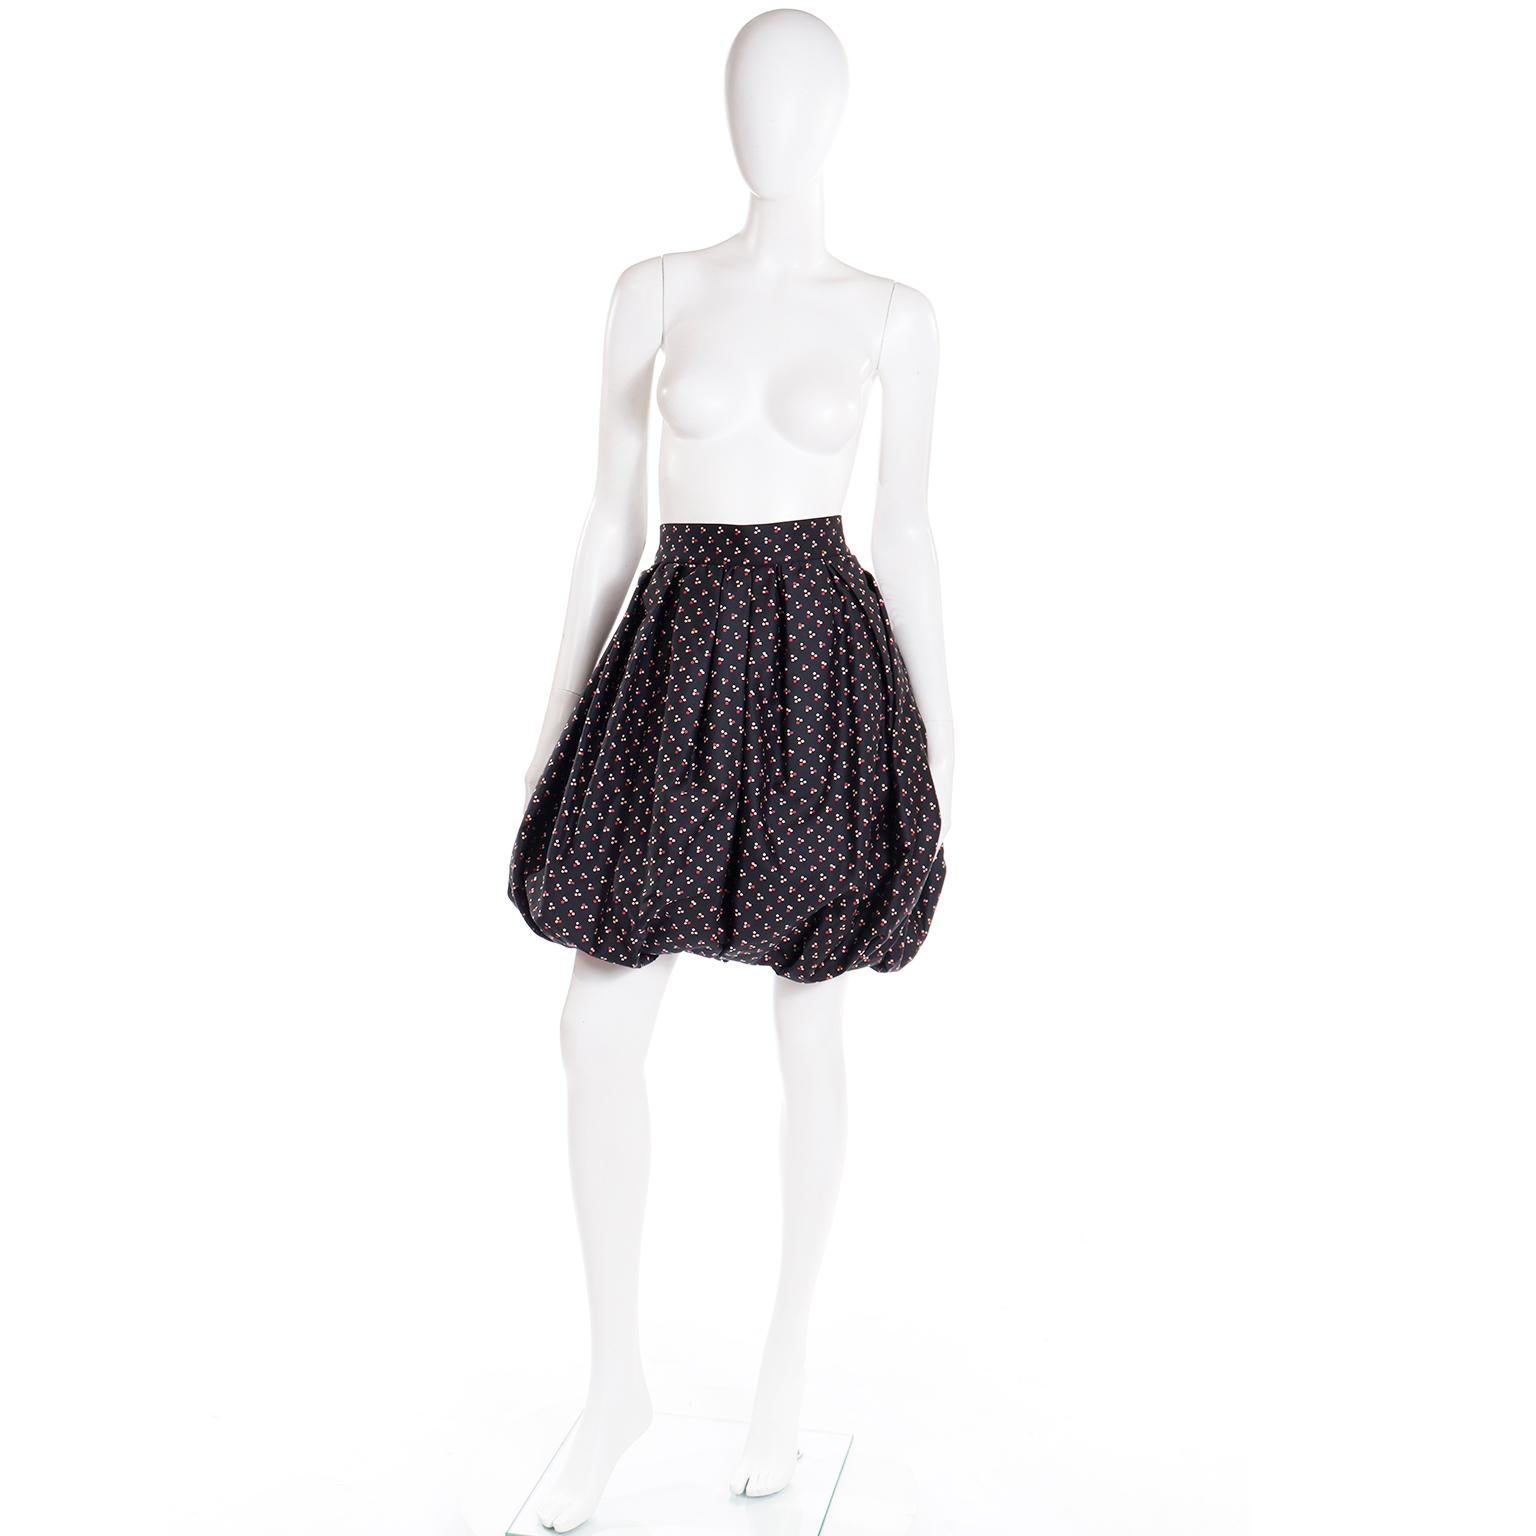 C'est un design tellement unique pour Thierry Mugler ! Cette jupe bulle en coton noir présente de petits carrés dans des tons de rose et de crème. La jupe a une taille fixe avec des boutons-pression et une fermeture à glissière cachée et un crochet